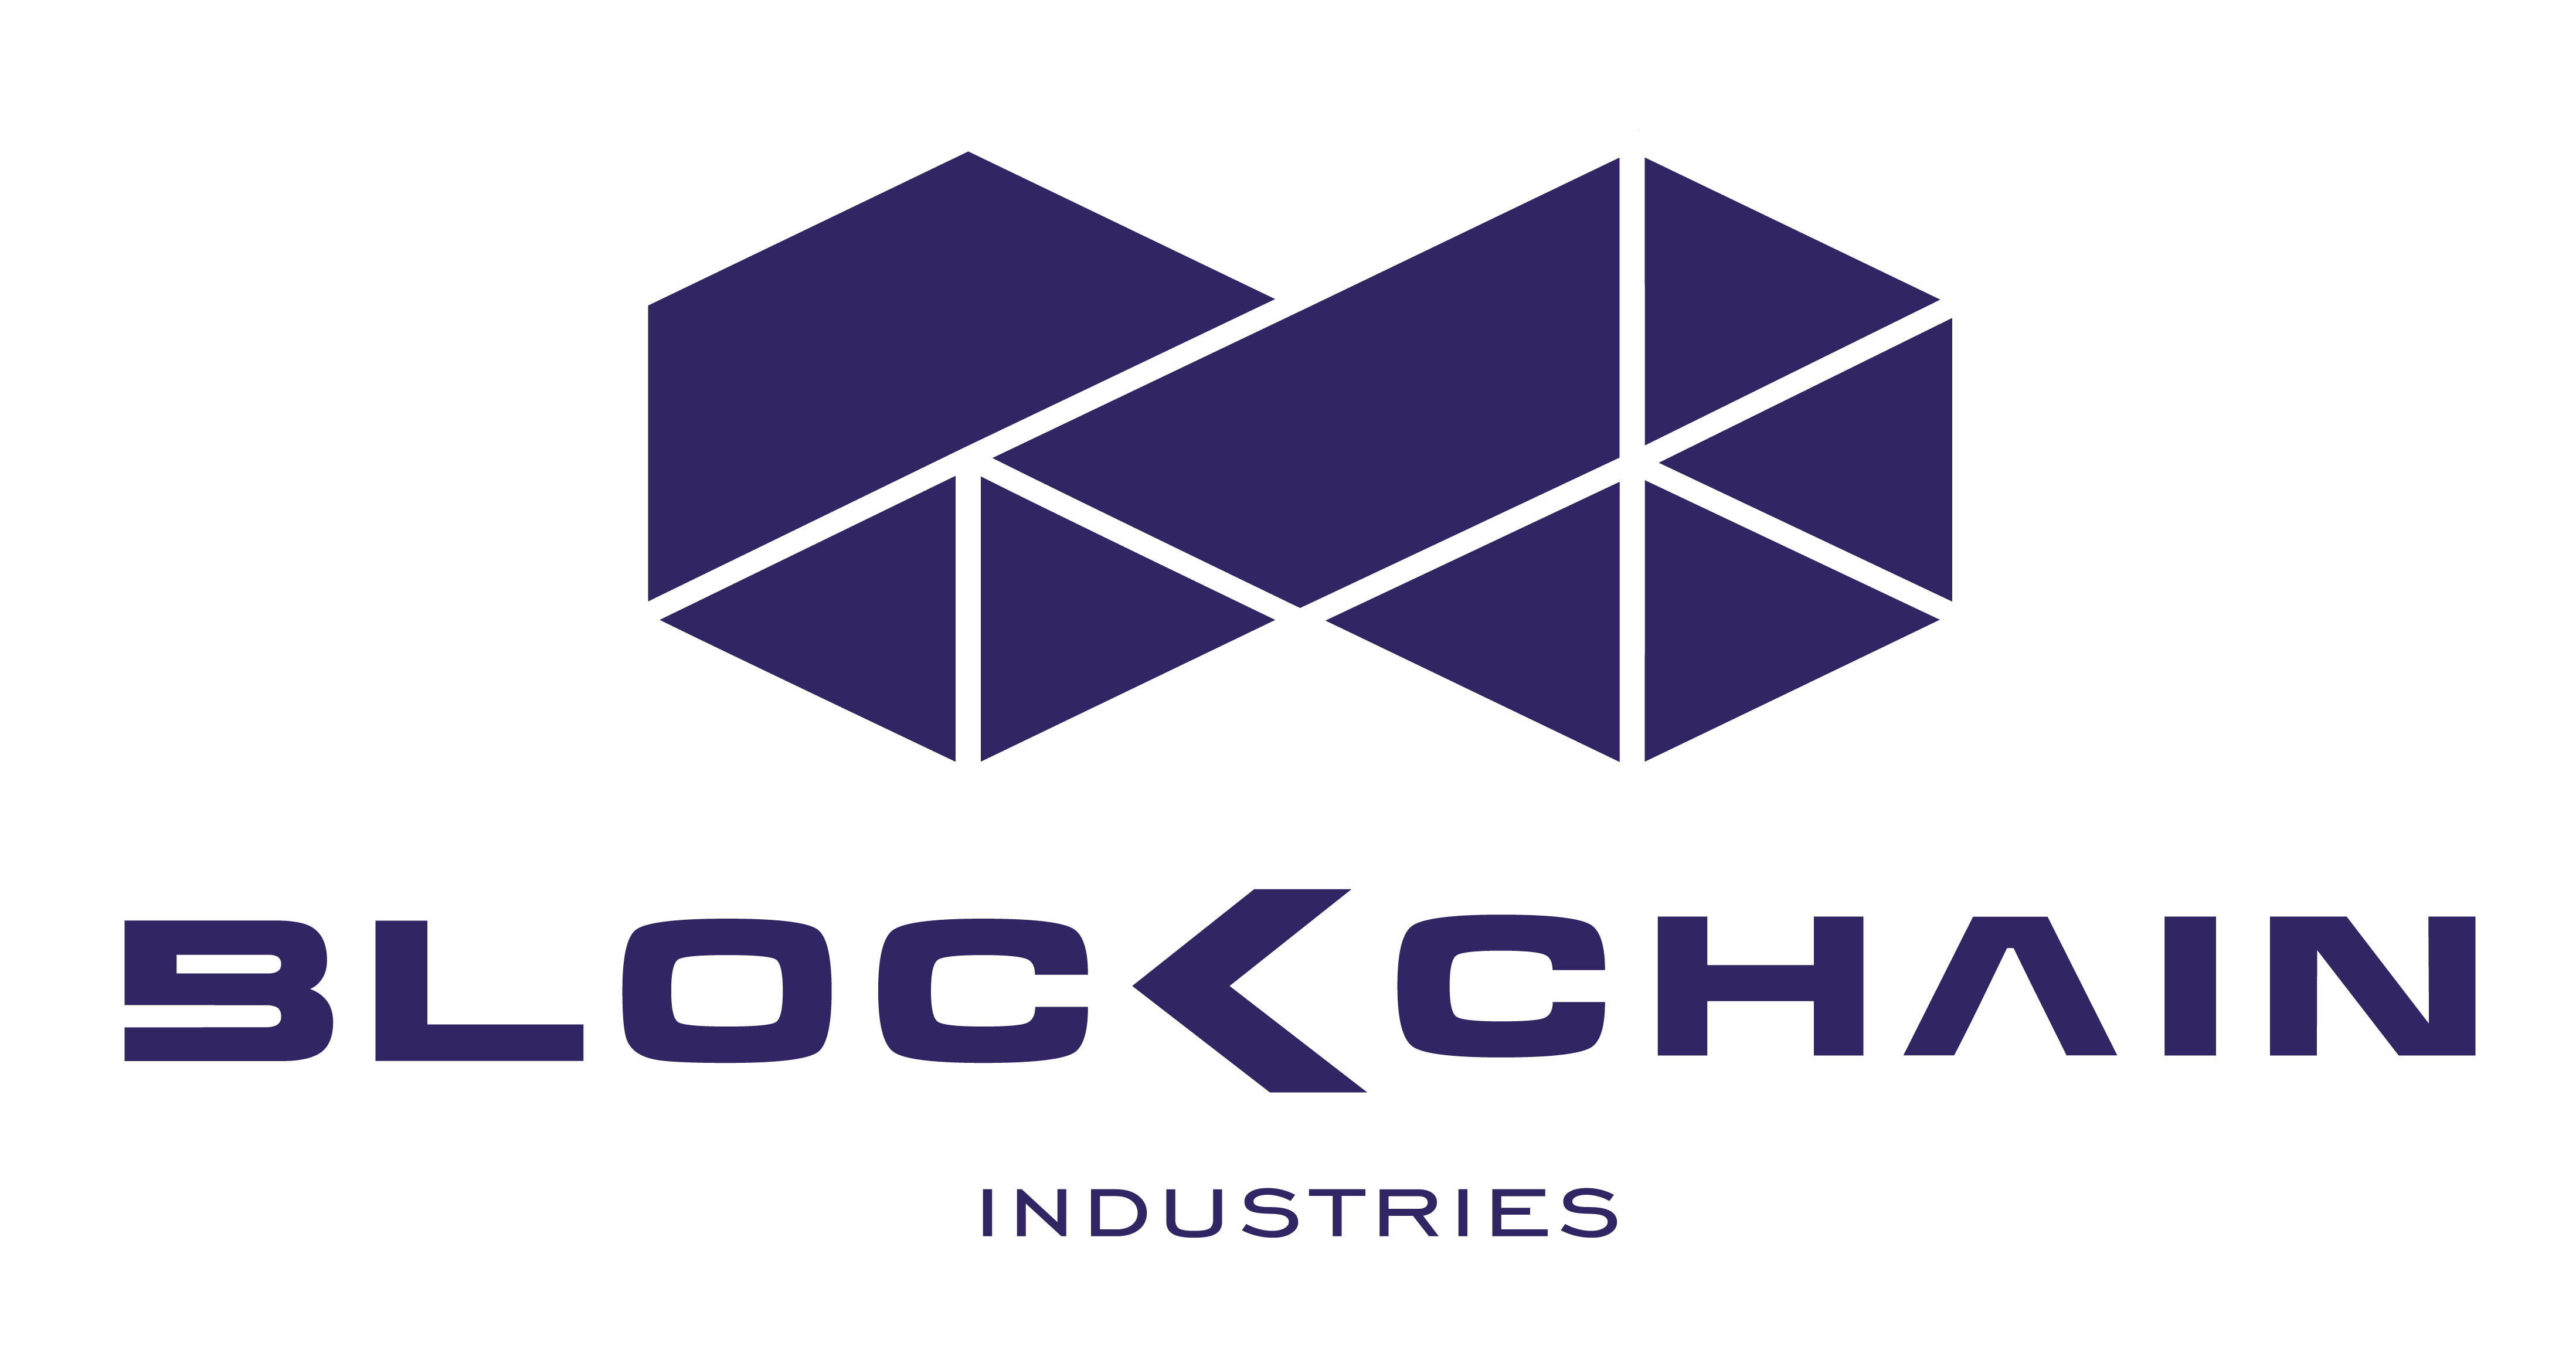 Blockchain Industries